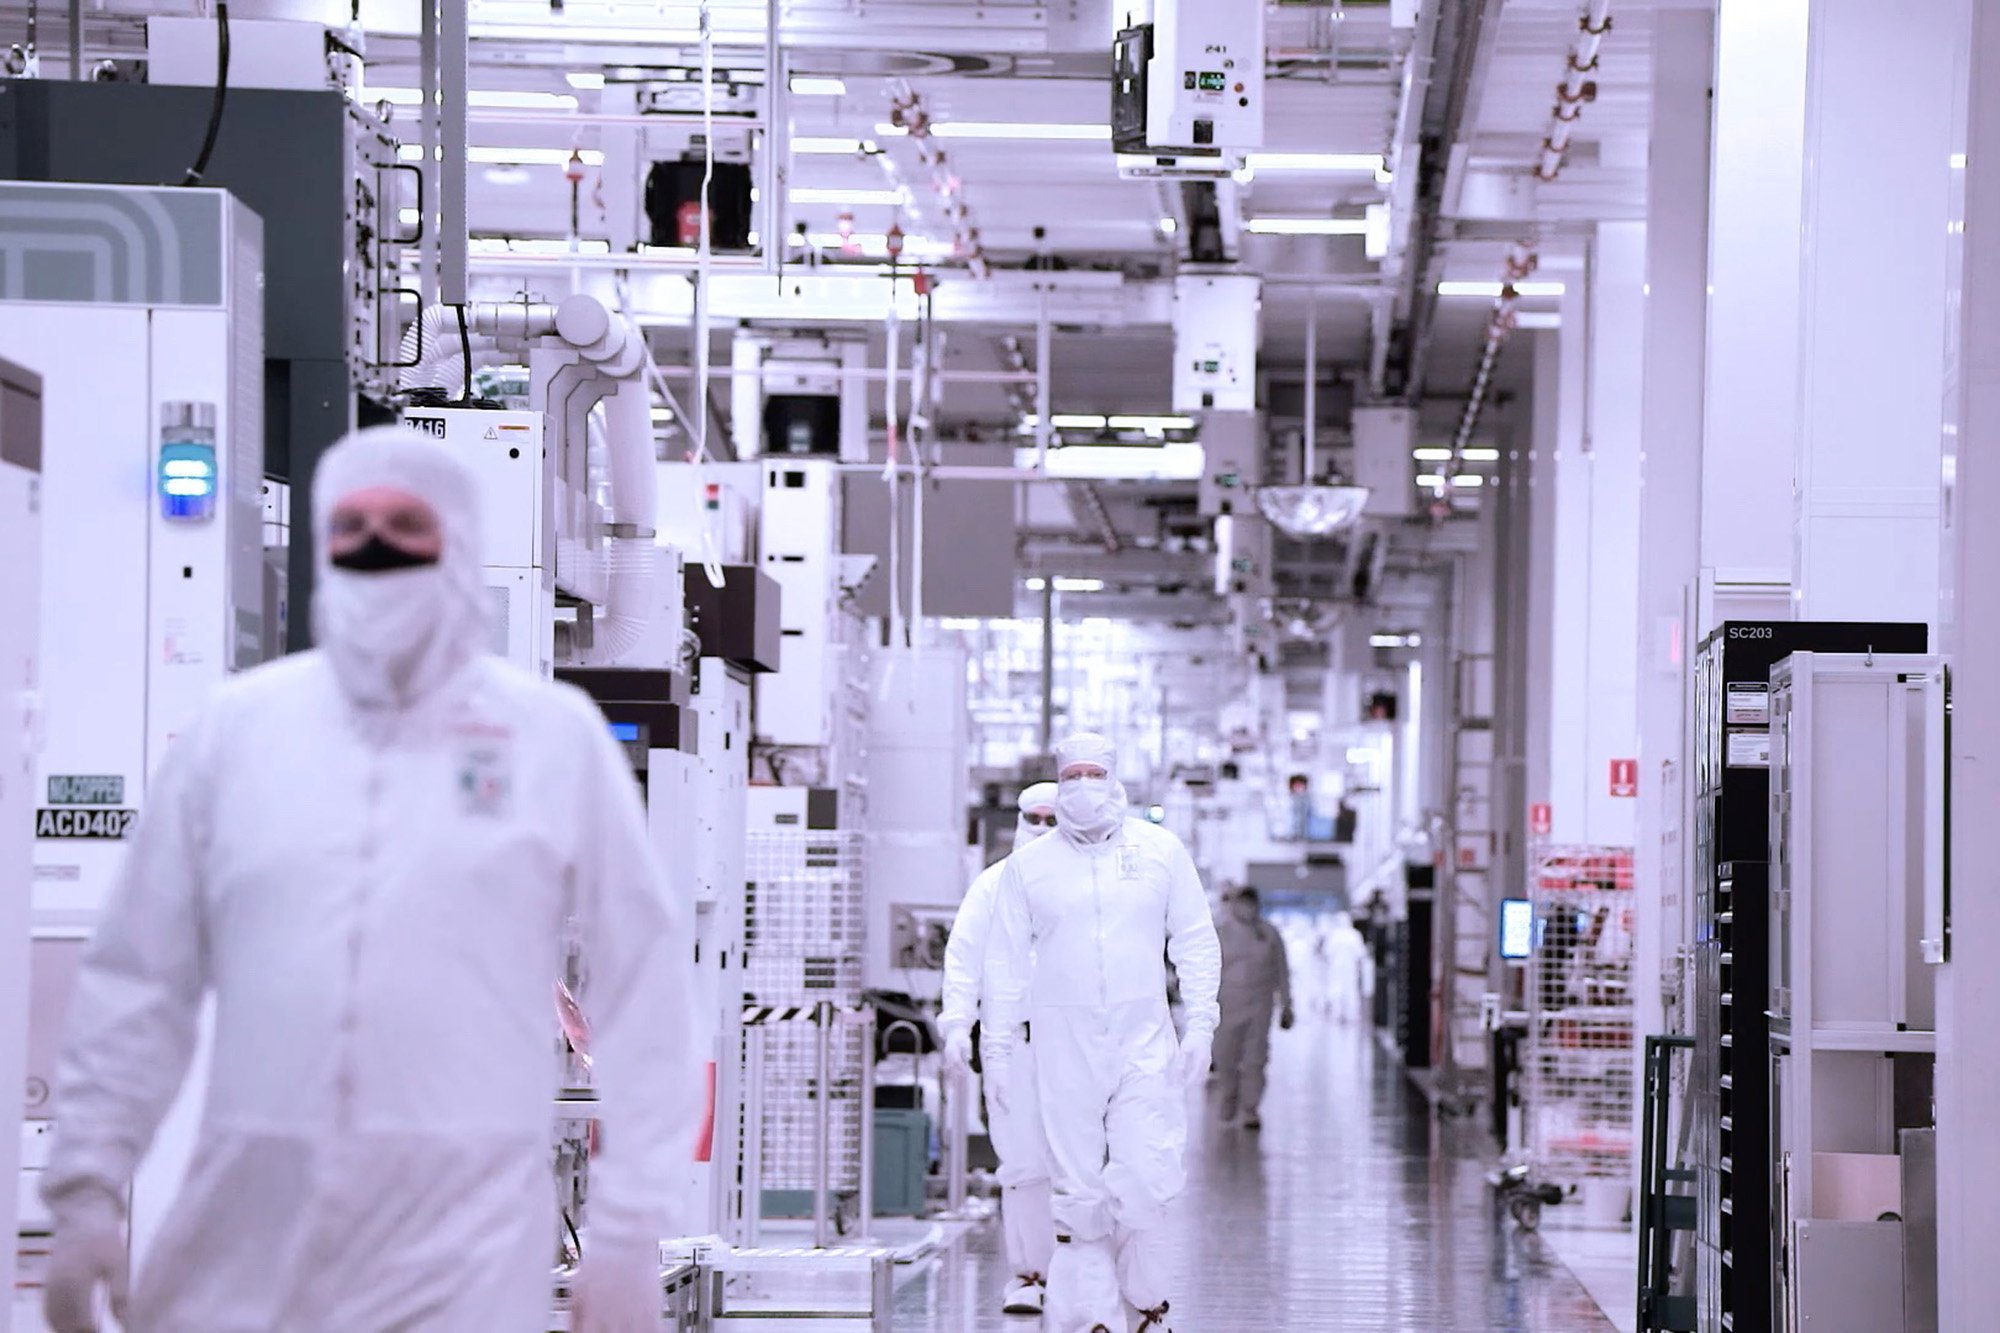  Intel va investi 100 de miliarde de dolari într-un complex uriaş pentru producţia de semiconductori în Ohio